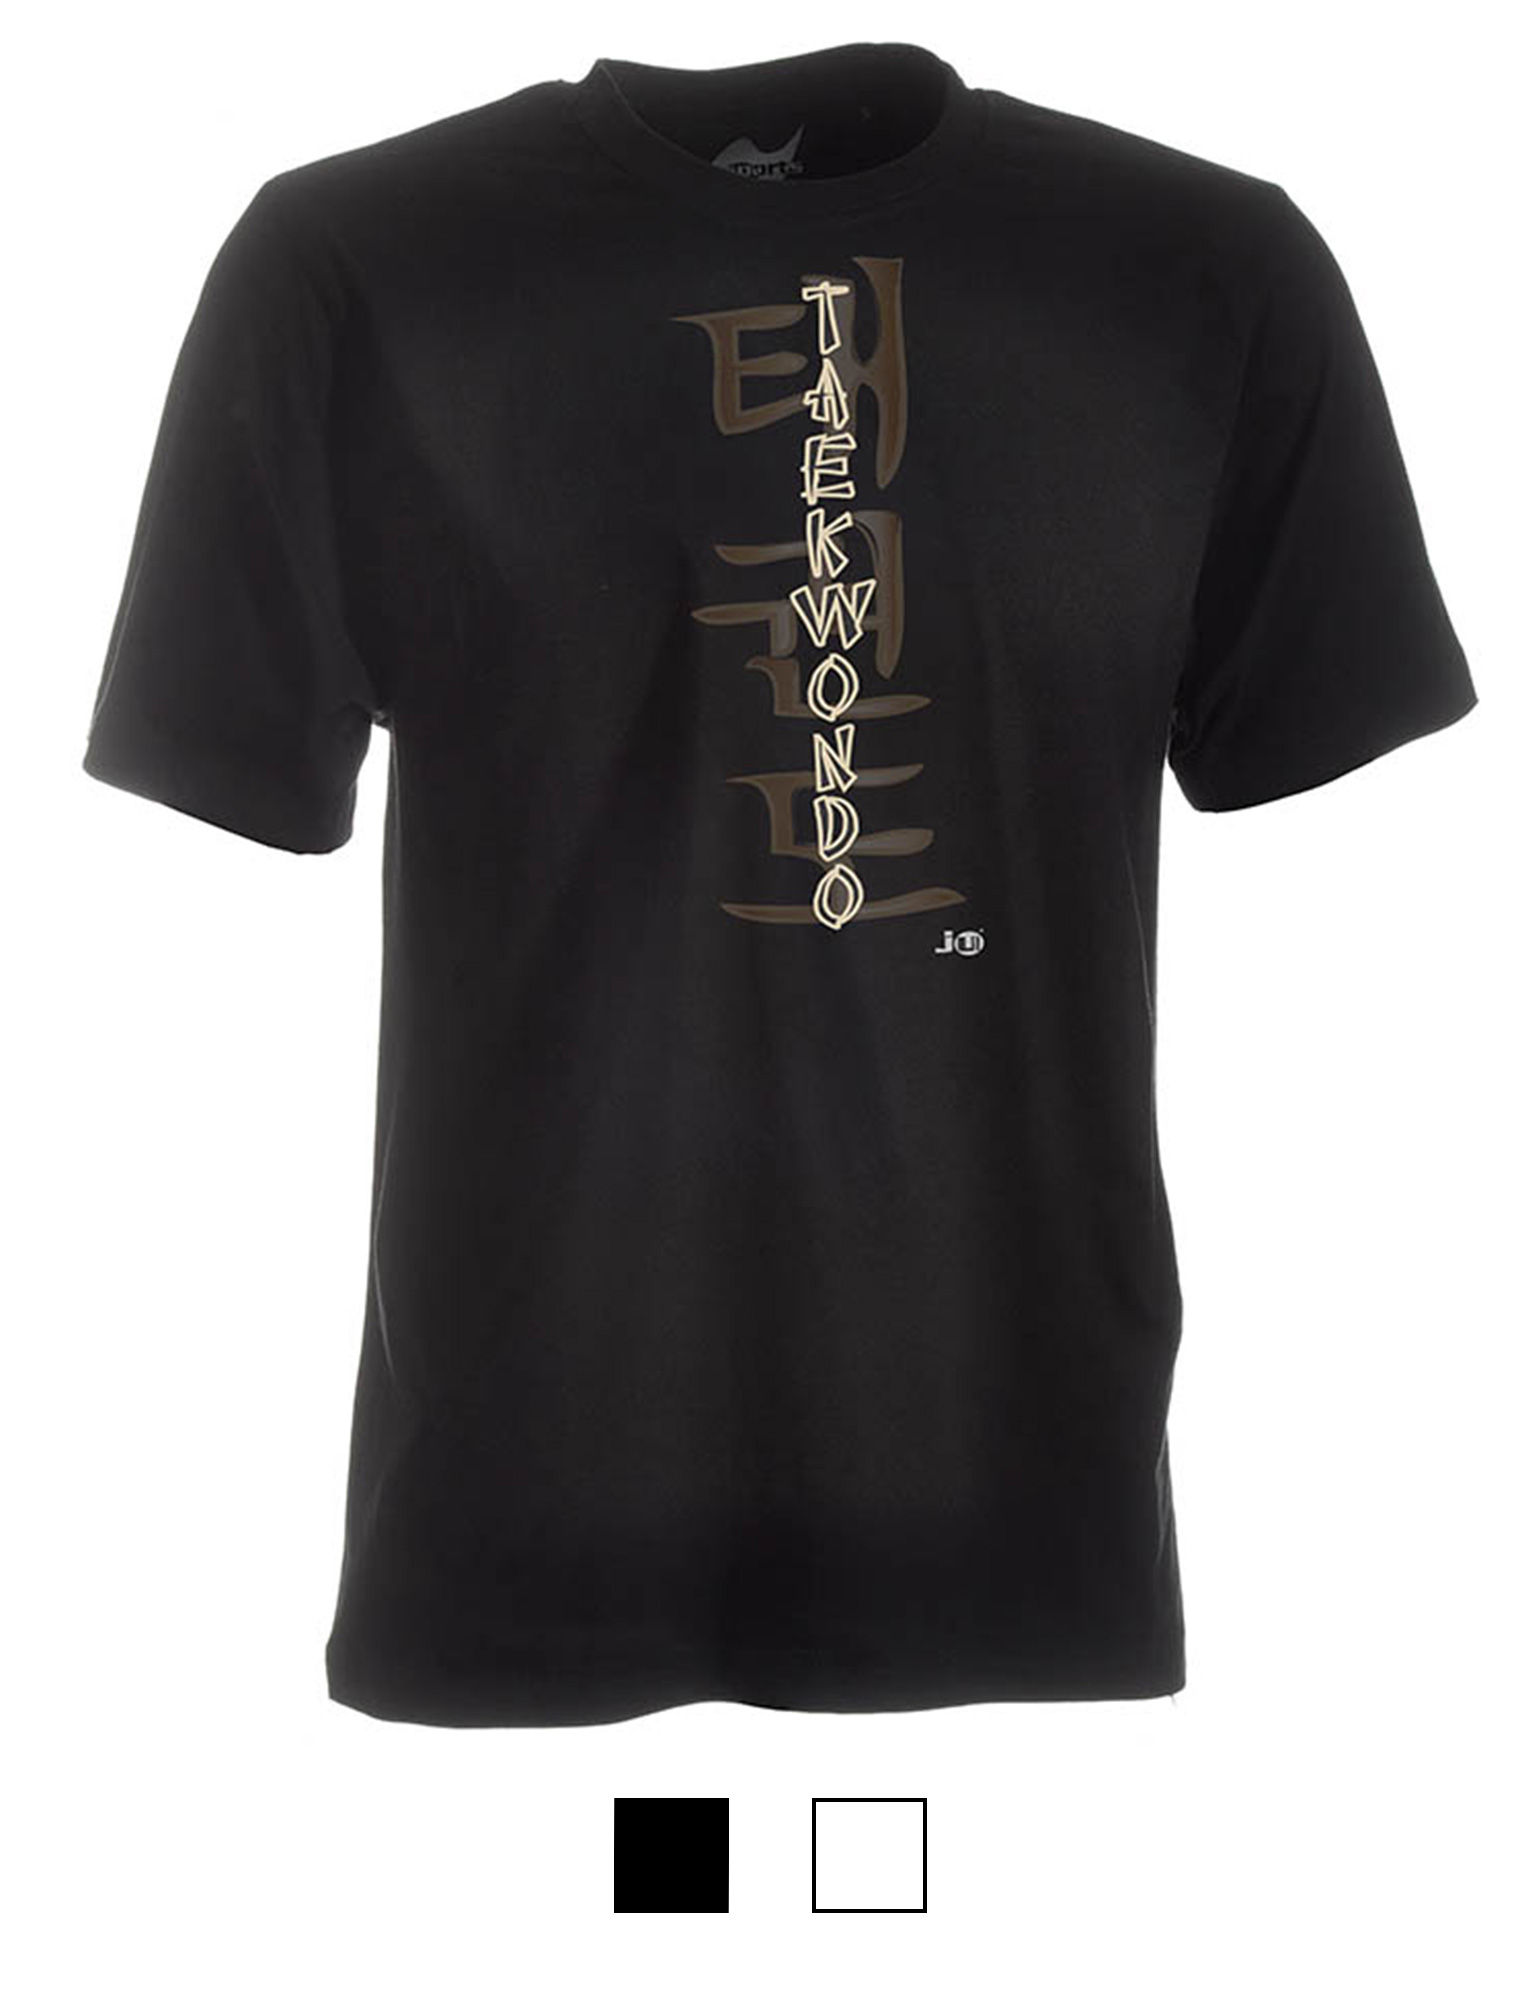 Taekwondo-Shirt Classic schwarz